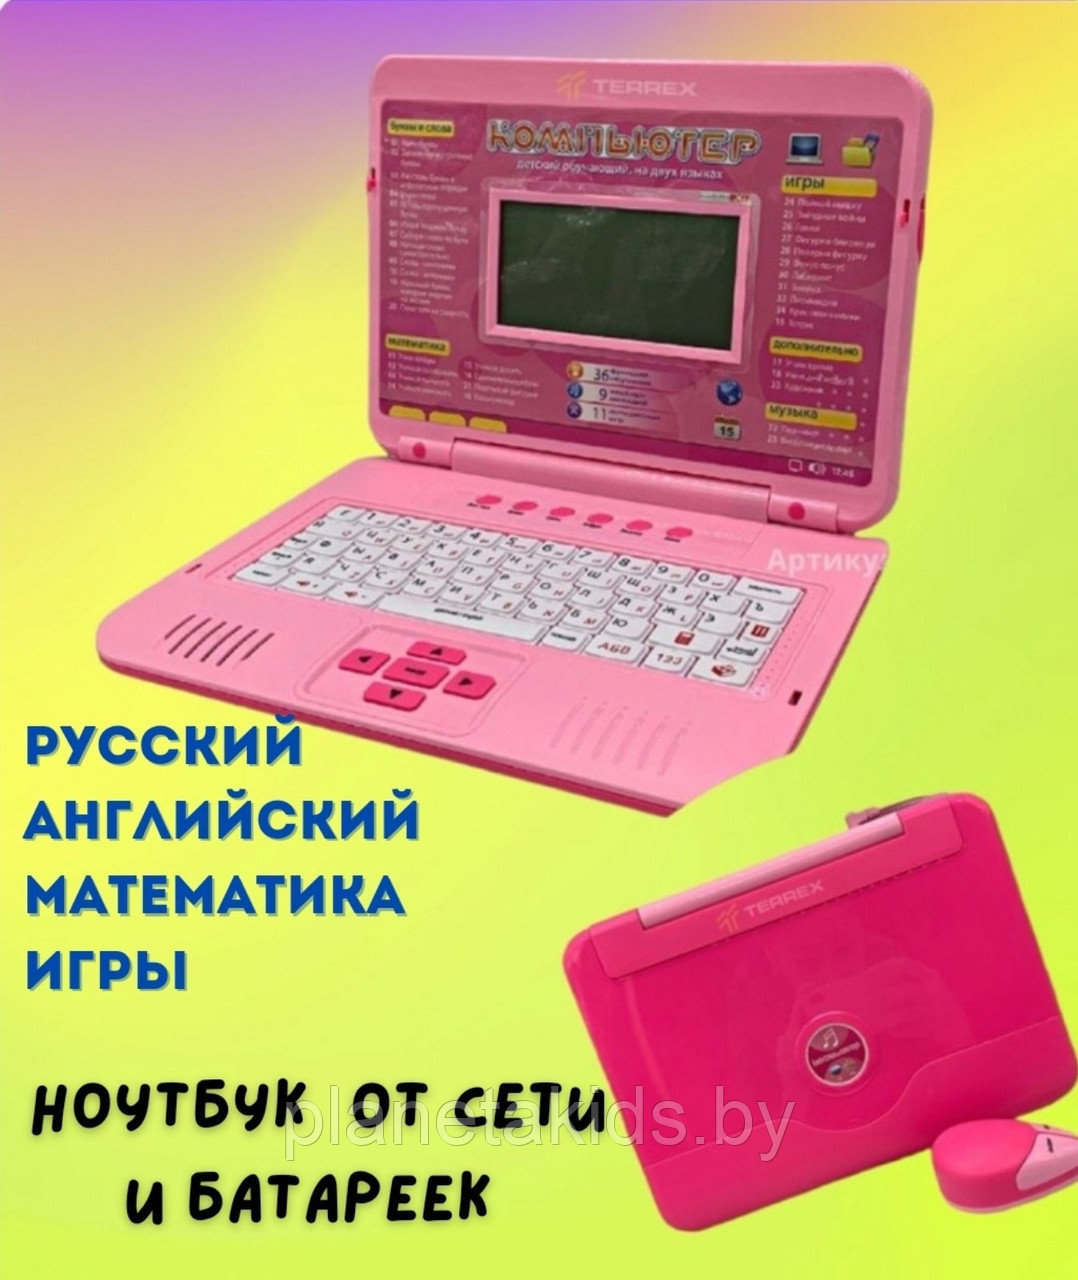 Детский ноутбук  игрушечный от сети и от батареек Обучающий компьютер (35 функций) с мышкой 7006